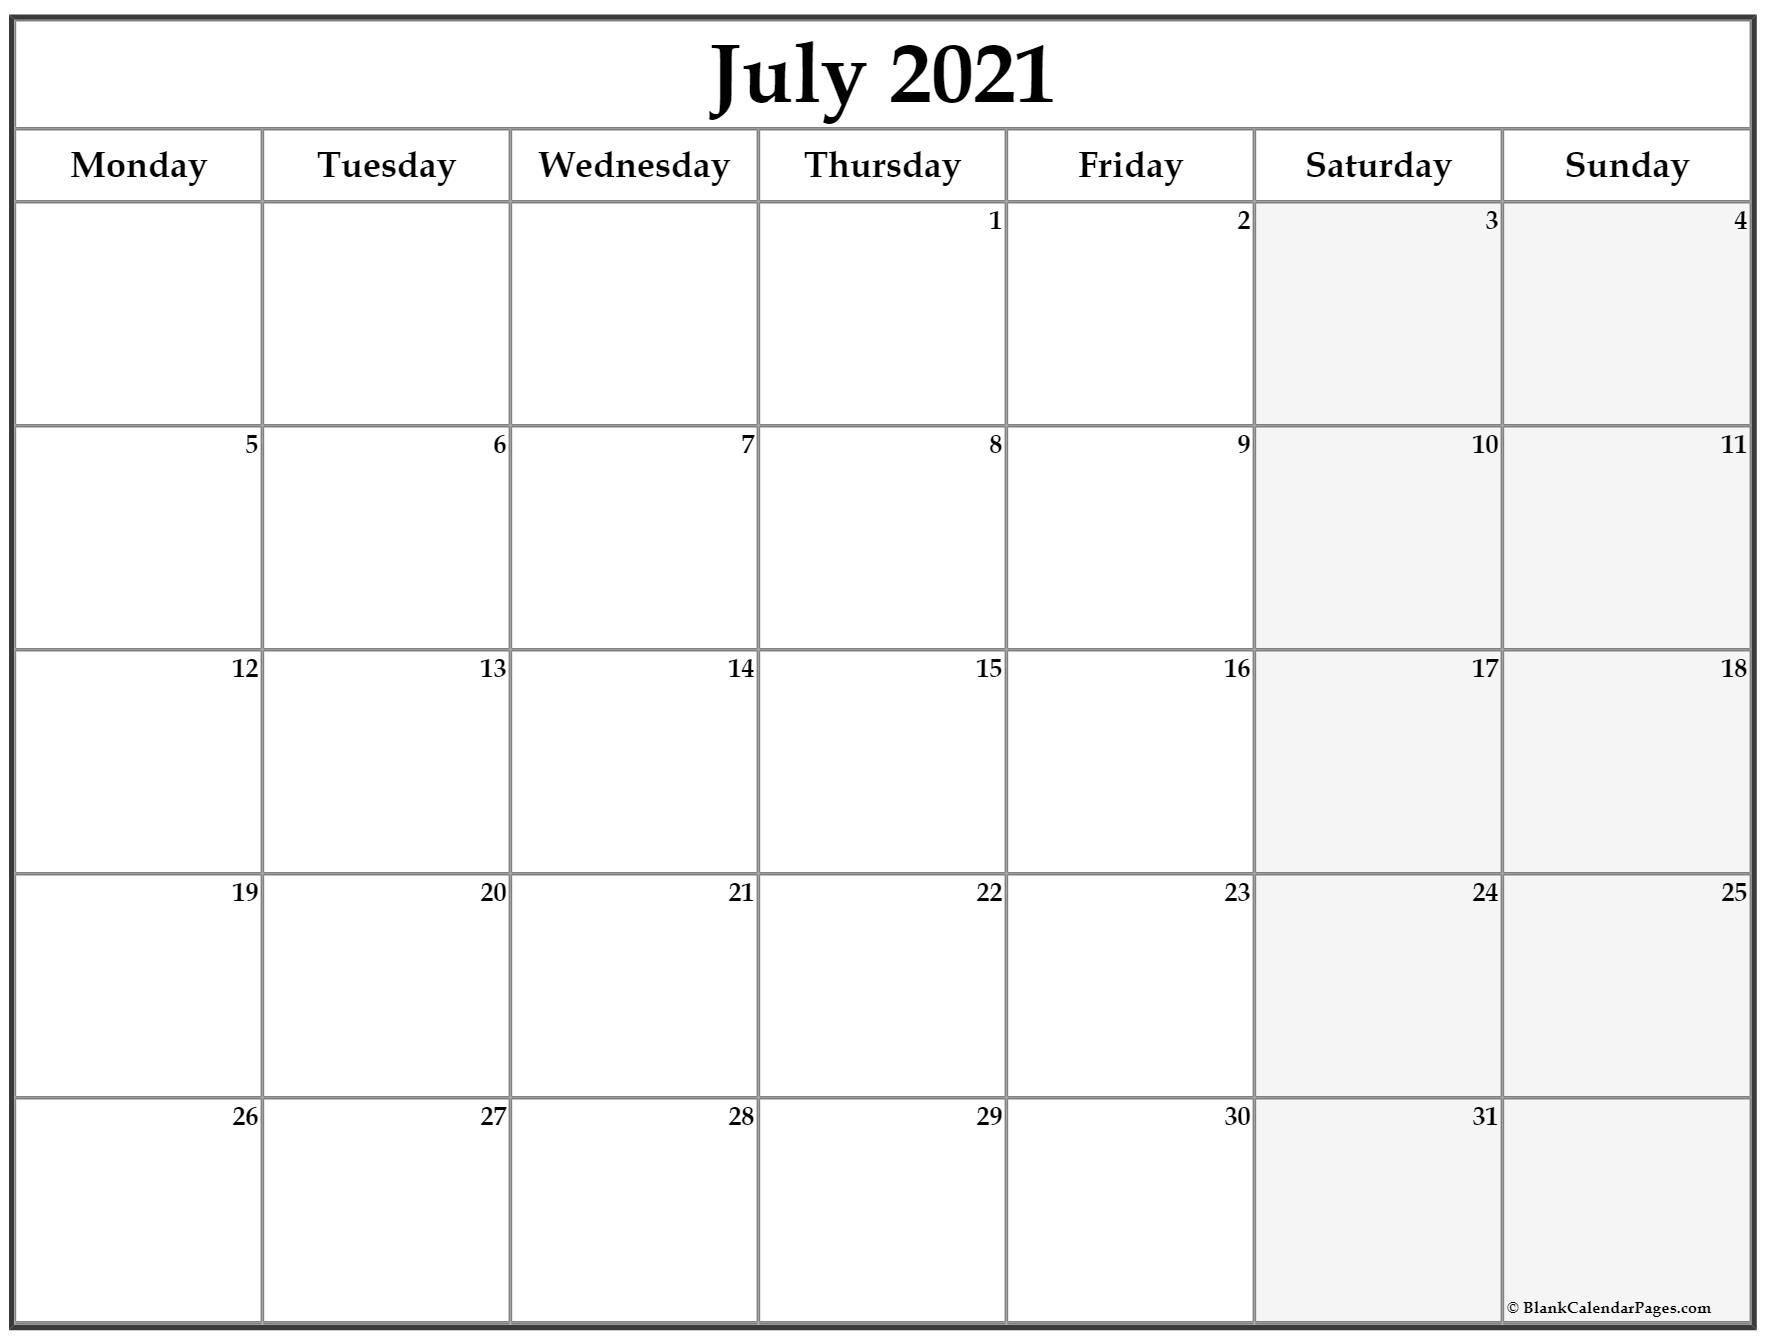 July 2021 Monday Calendar | Monday To Sunday